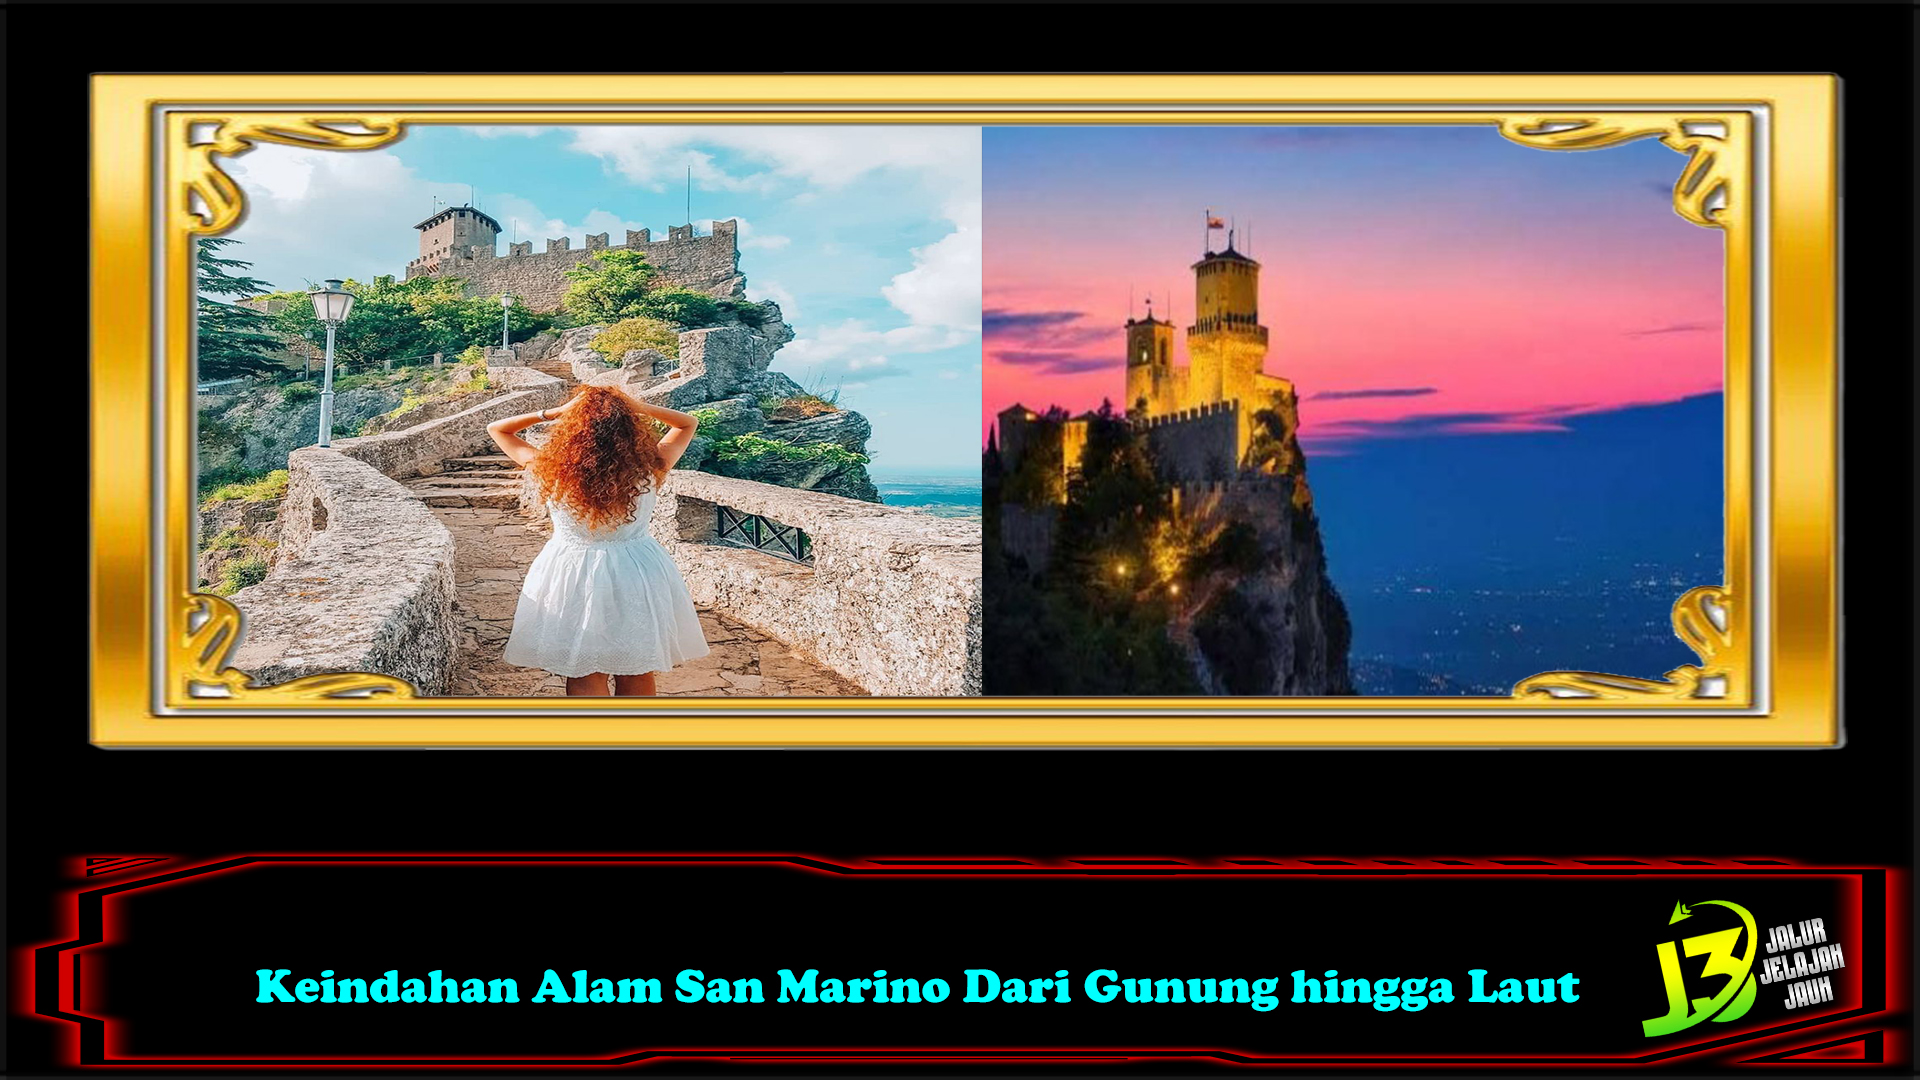 Keindahan Alam San Marino Dari Gunung hingga Laut